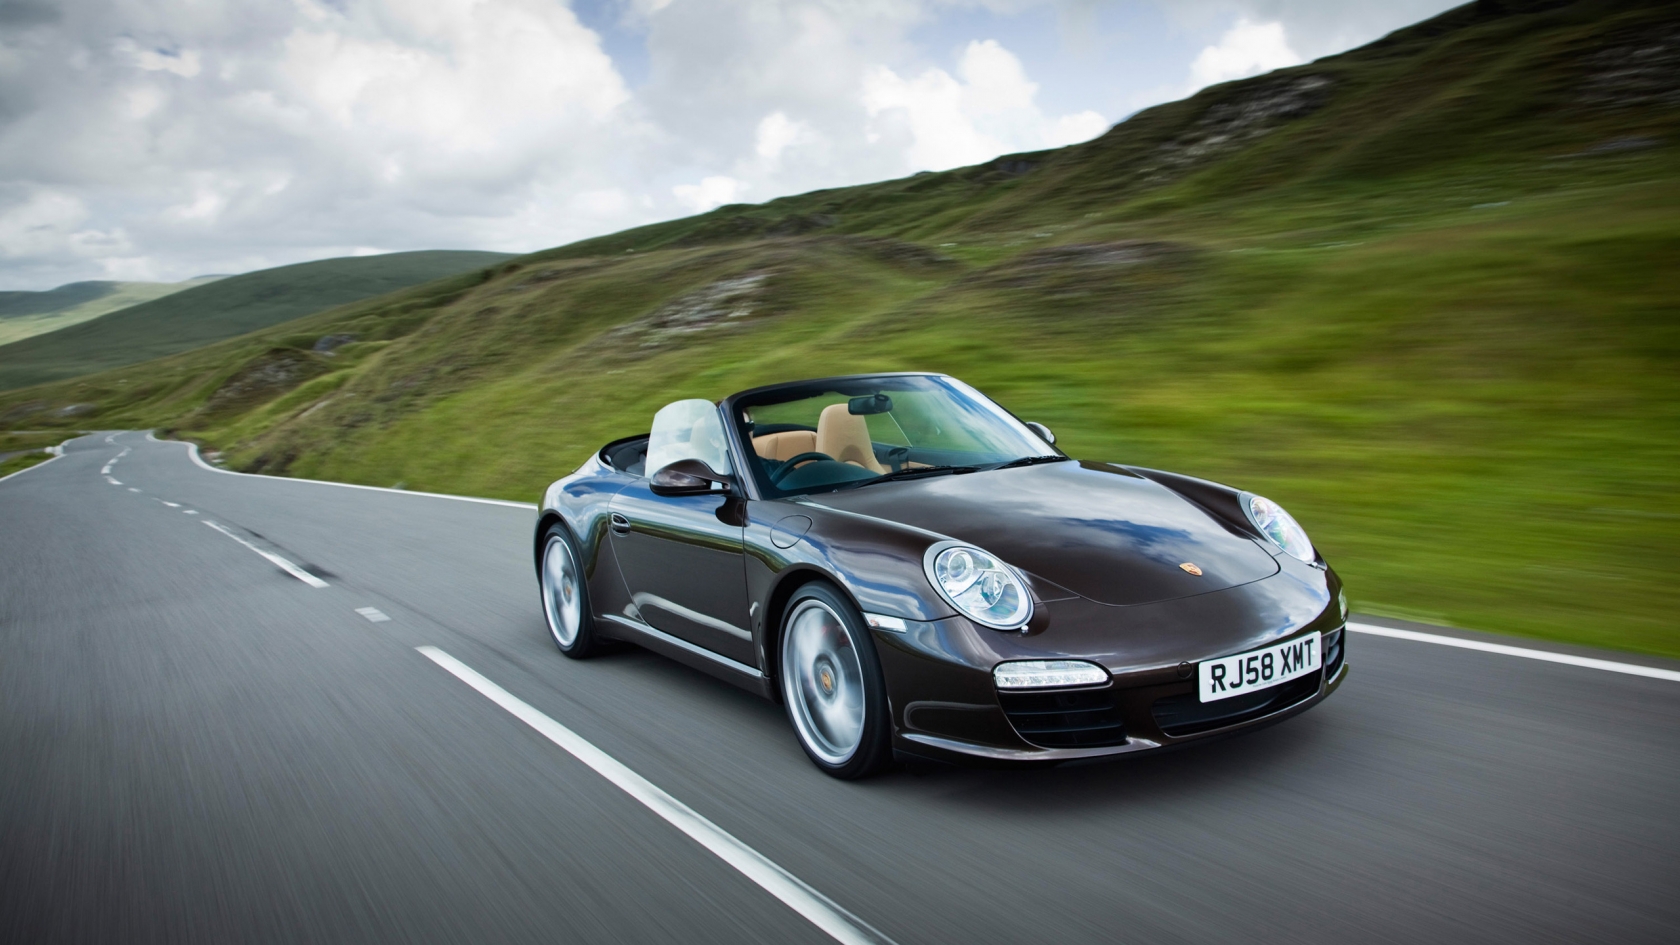 Beautifull 911 Porsche for 1680 x 945 HDTV resolution